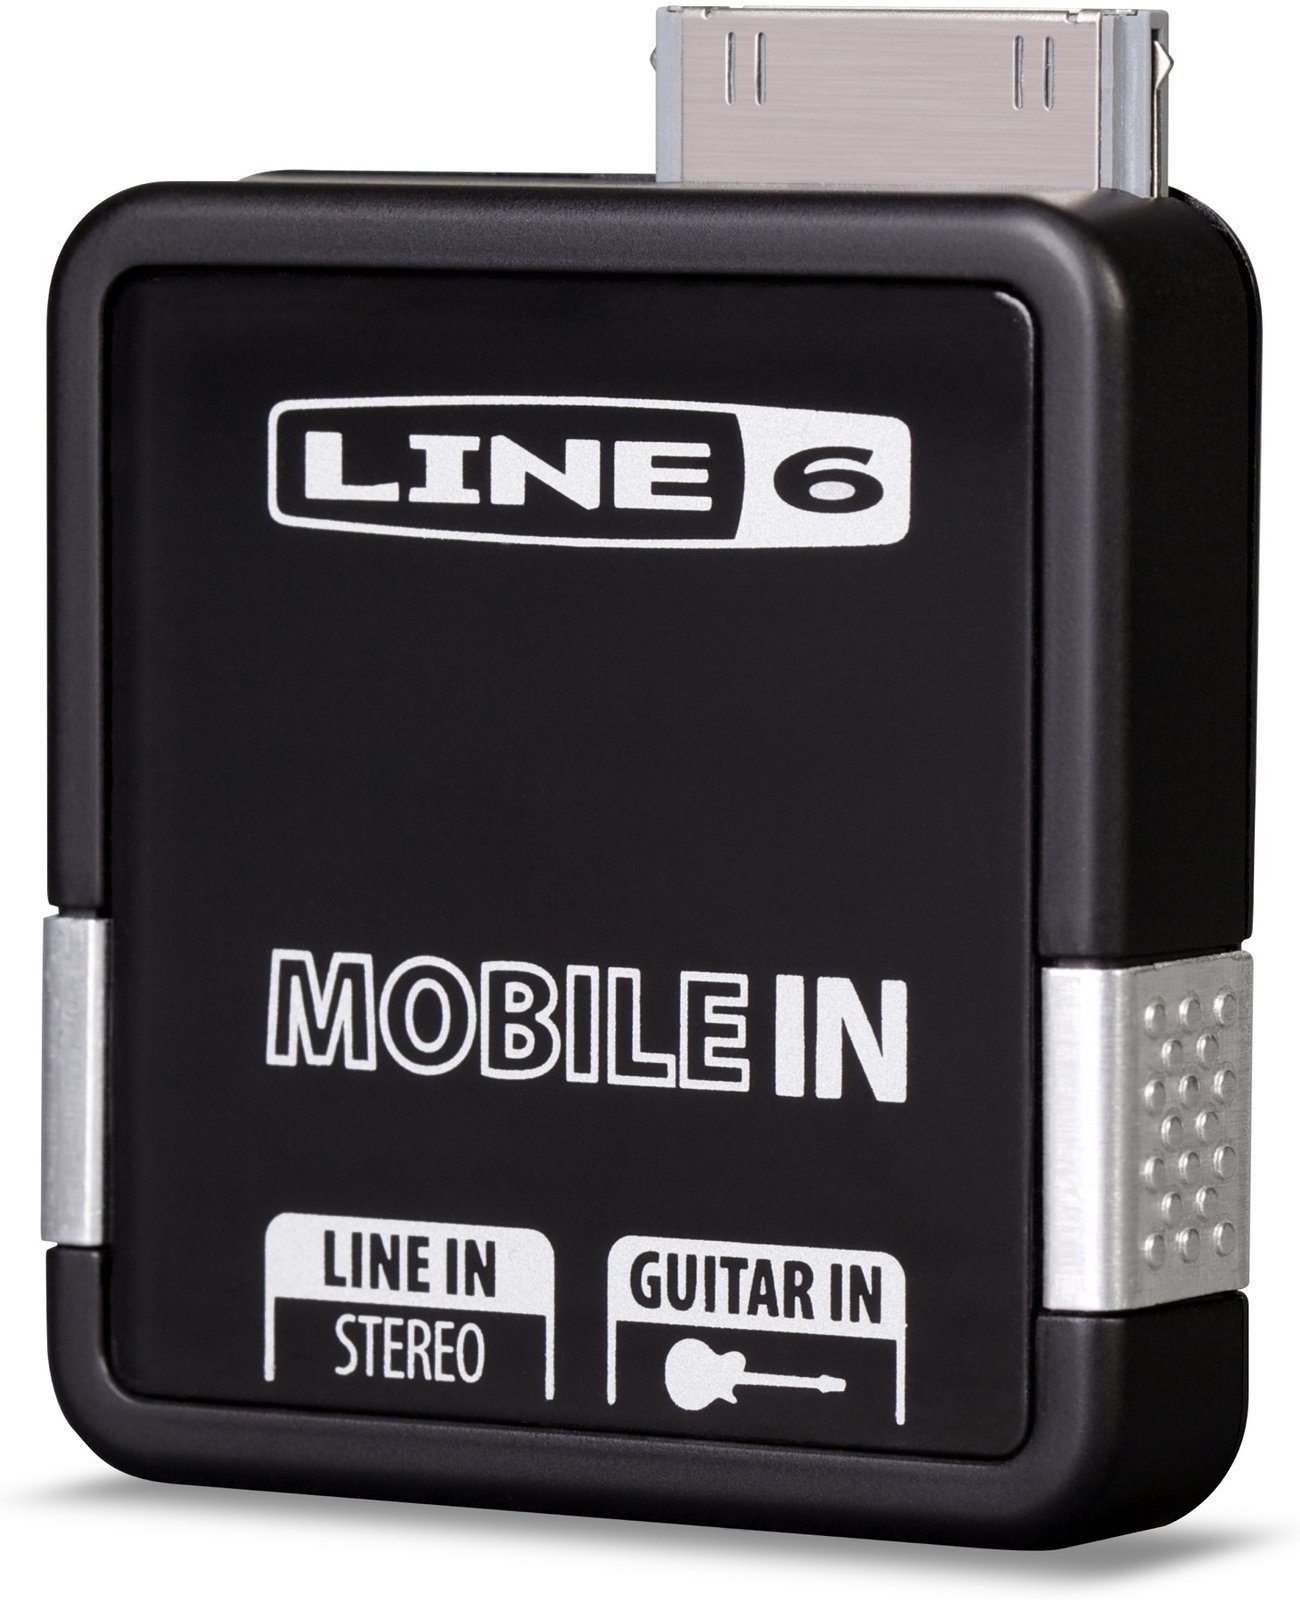 Equipo de estudio Line6 Mobile In